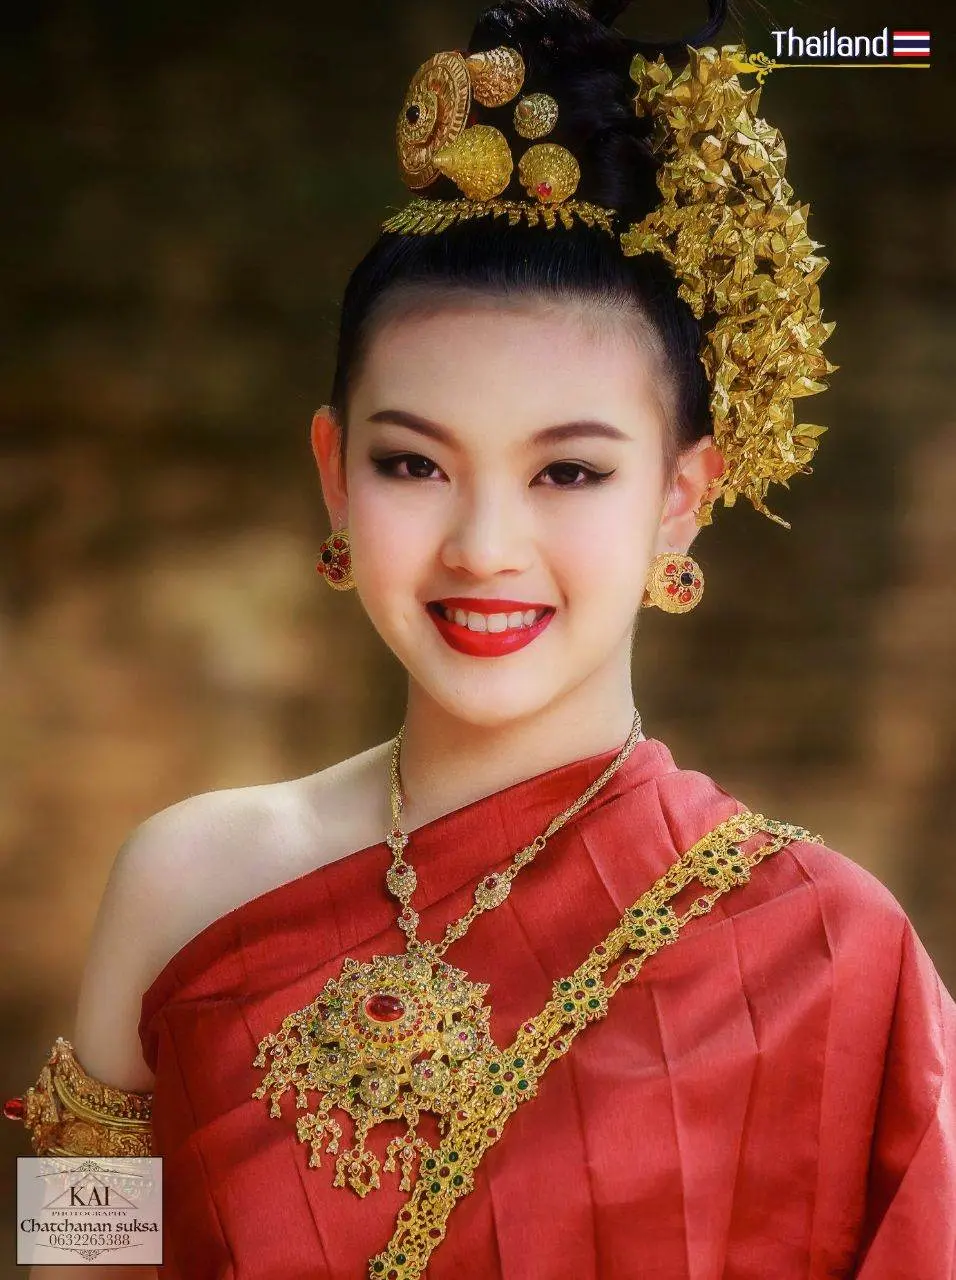 THAILAND 🇹🇭 | Tai Yuan in Lanna kingdom ✦